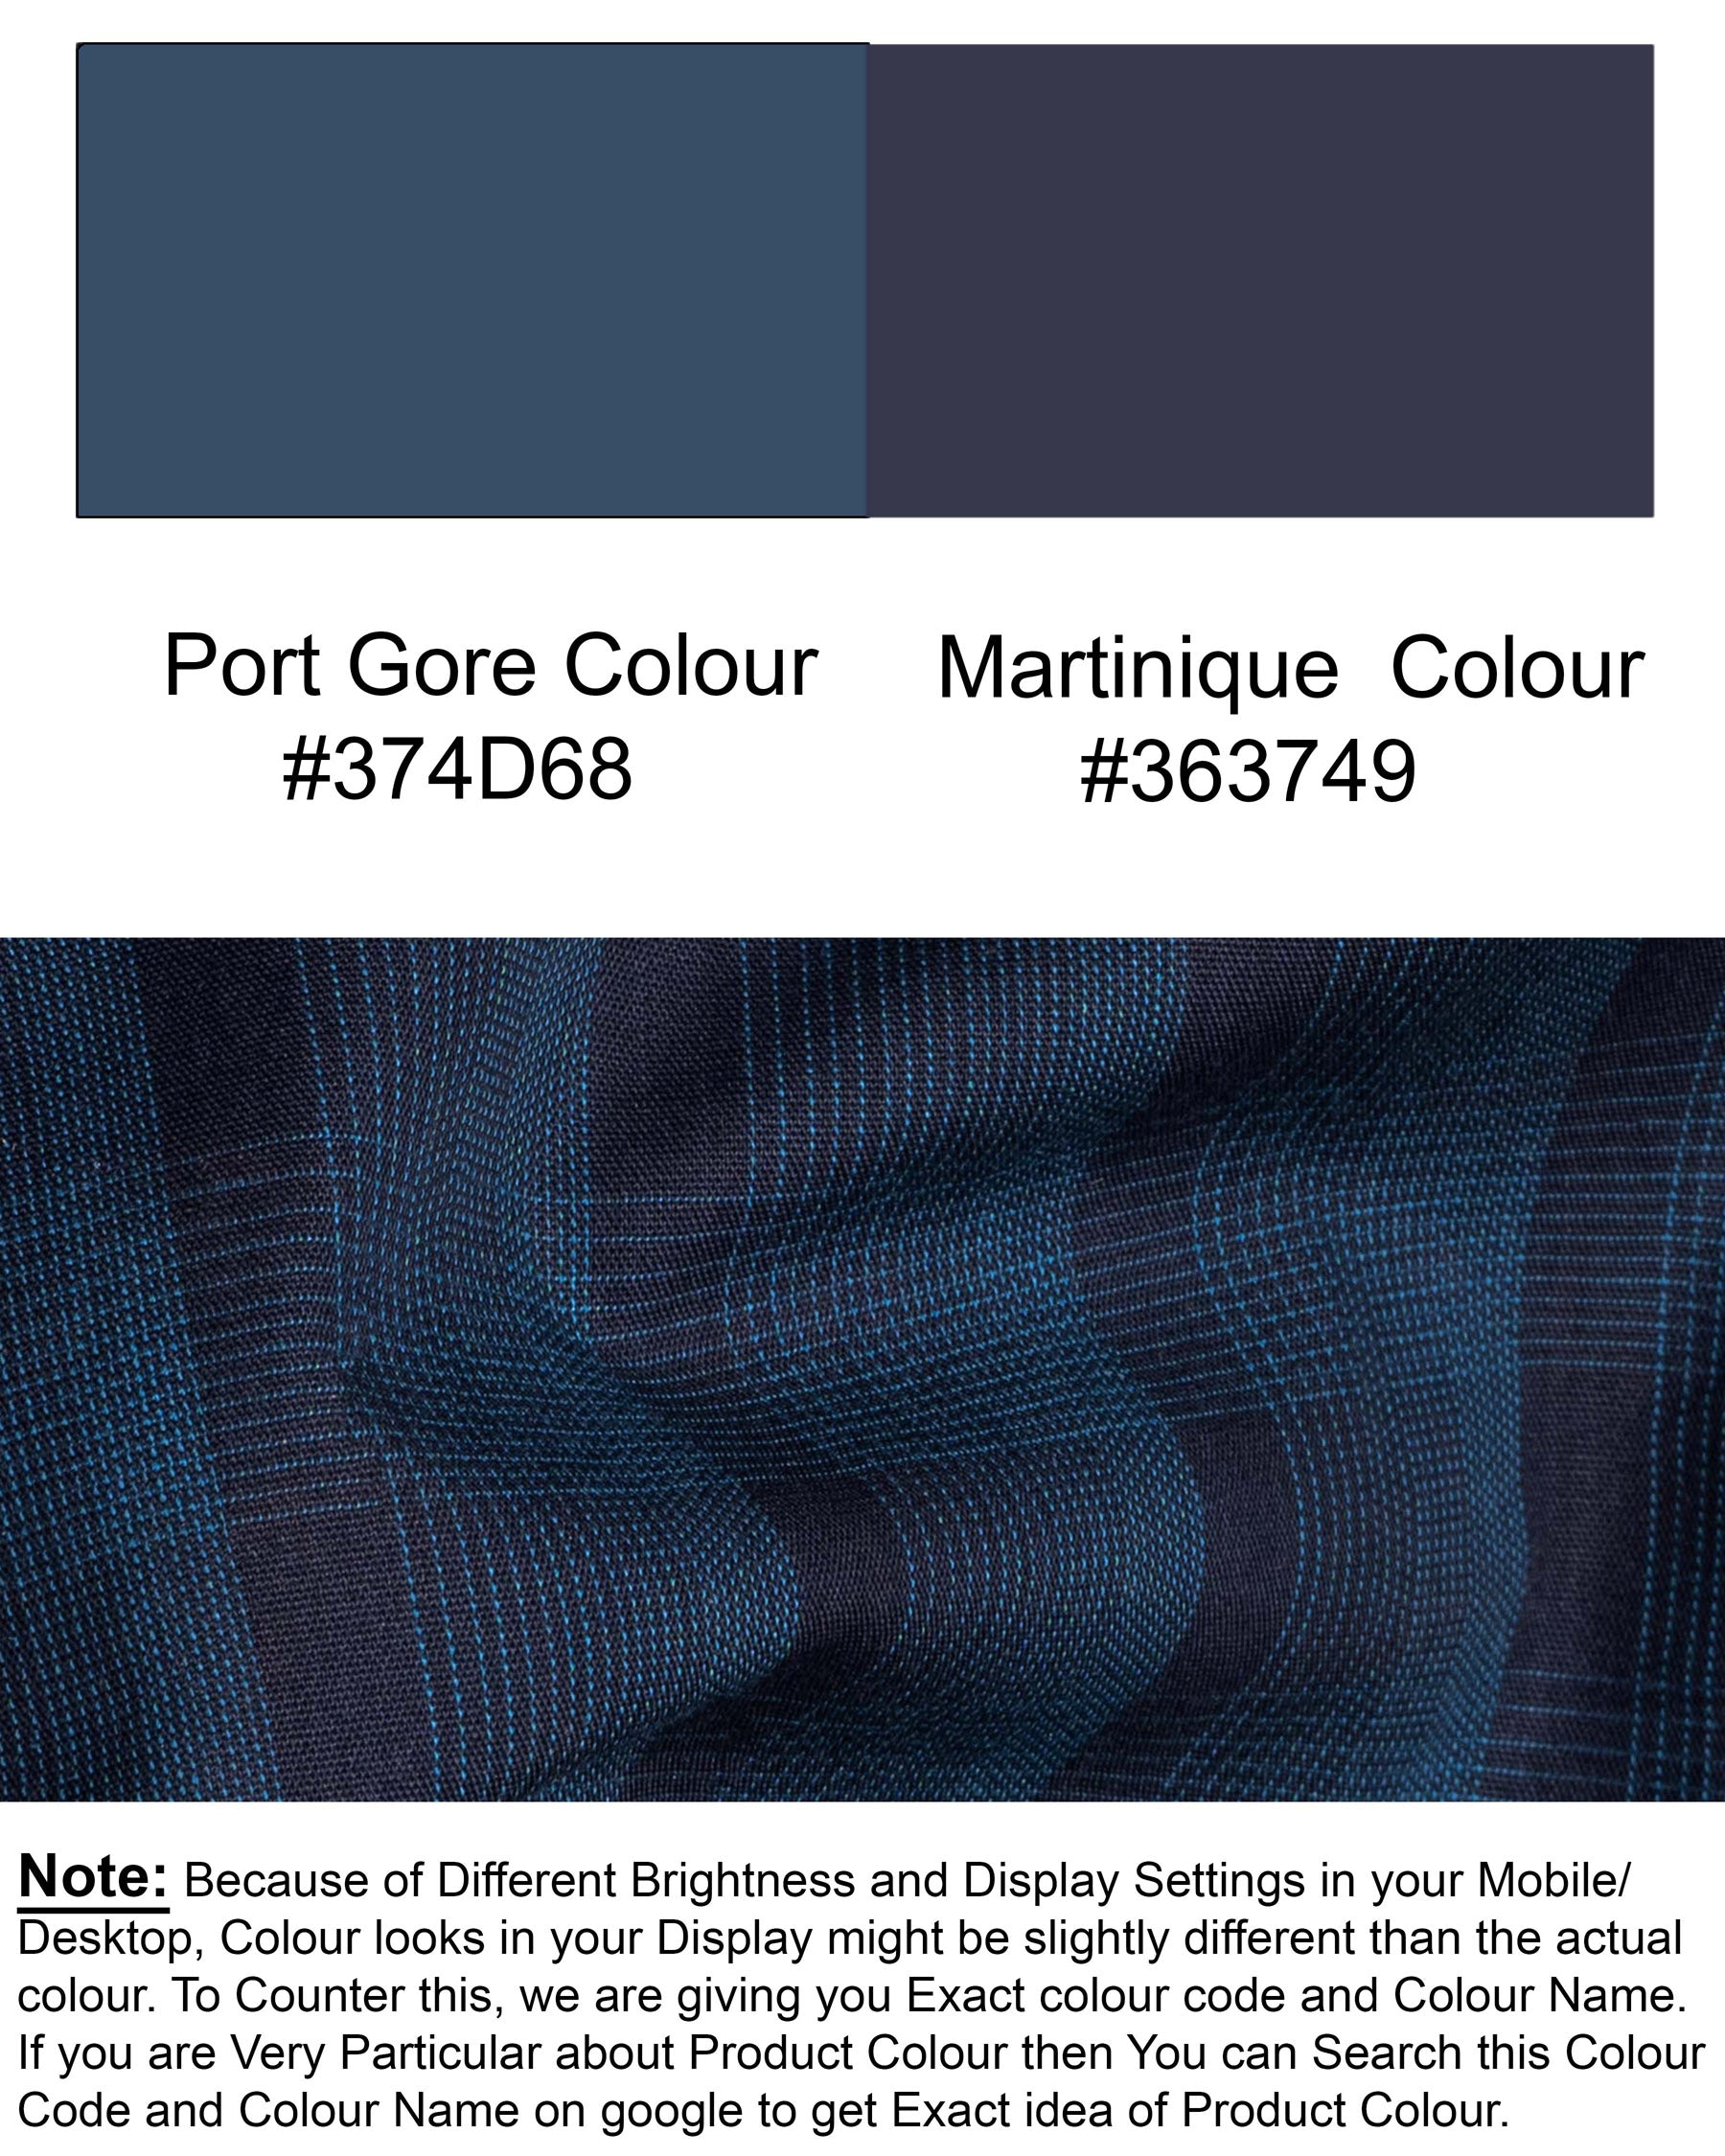 Port Gore and Martinique Blue Premium Cotton Shirt 5923-BLK-38, 5923-BLK-H-38, 5923-BLK-39, 5923-BLK-H-39, 5923-BLK-40, 5923-BLK-H-40, 5923-BLK-42, 5923-BLK-H-42, 5923-BLK-44, 5923-BLK-H-44, 5923-BLK-46, 5923-BLK-H-46, 5923-BLK-48, 5923-BLK-H-48, 5923-BLK-50, 5923-BLK-H-50, 5923-BLK-52, 5923-BLK-H-52